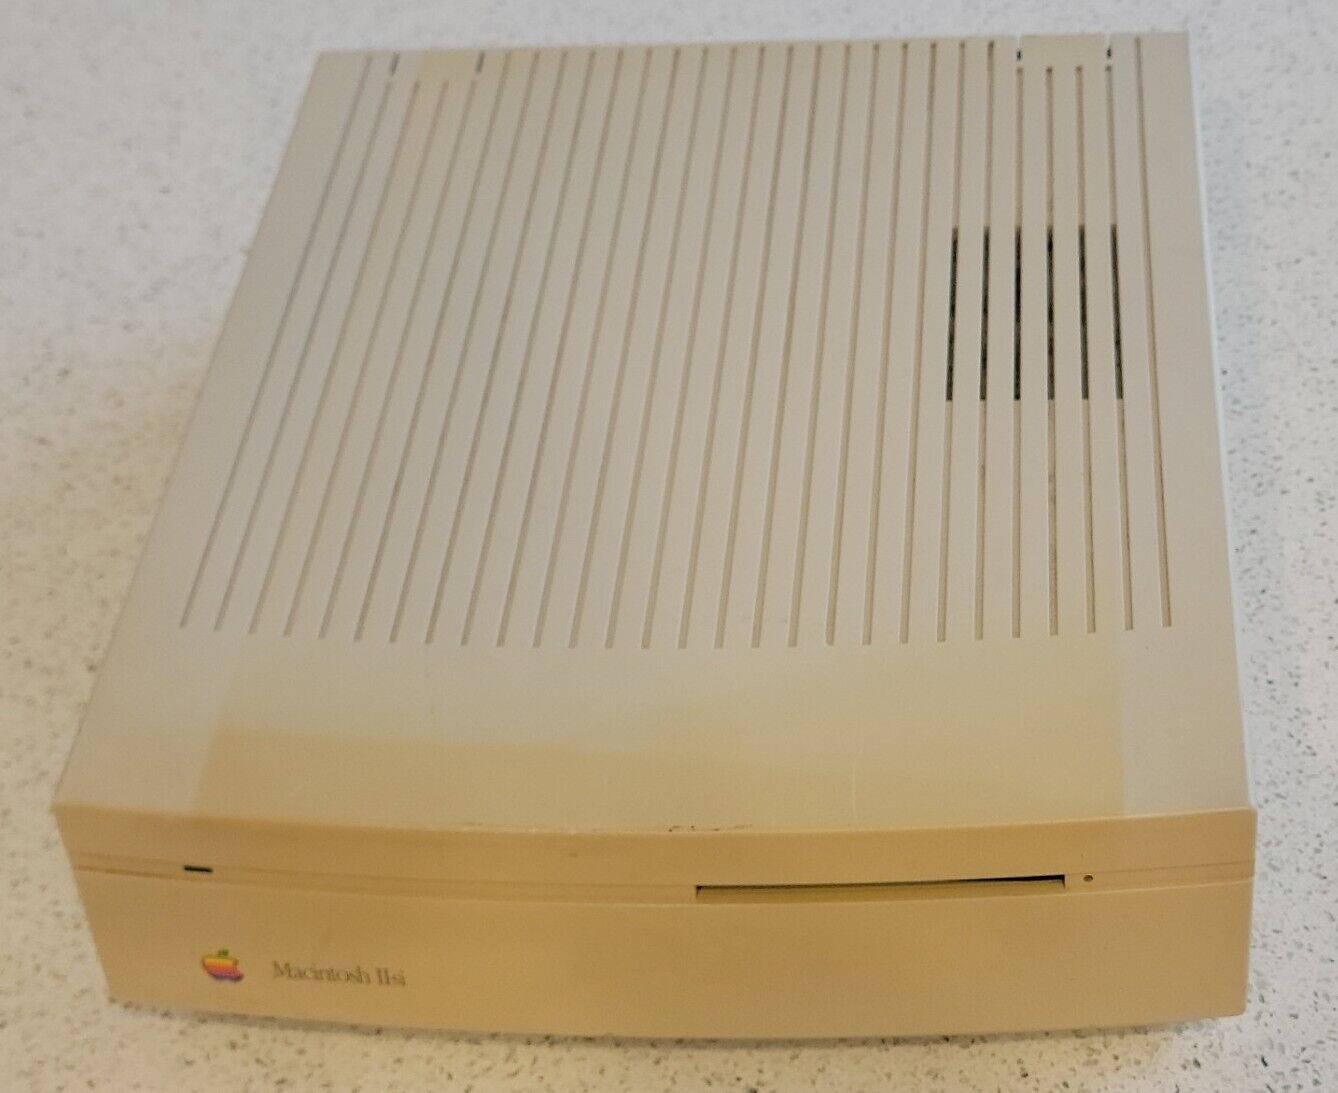 Apple Macintosh IIsi M0360 Deskstop II si Computer Vintage Mac | Sold AS IS 